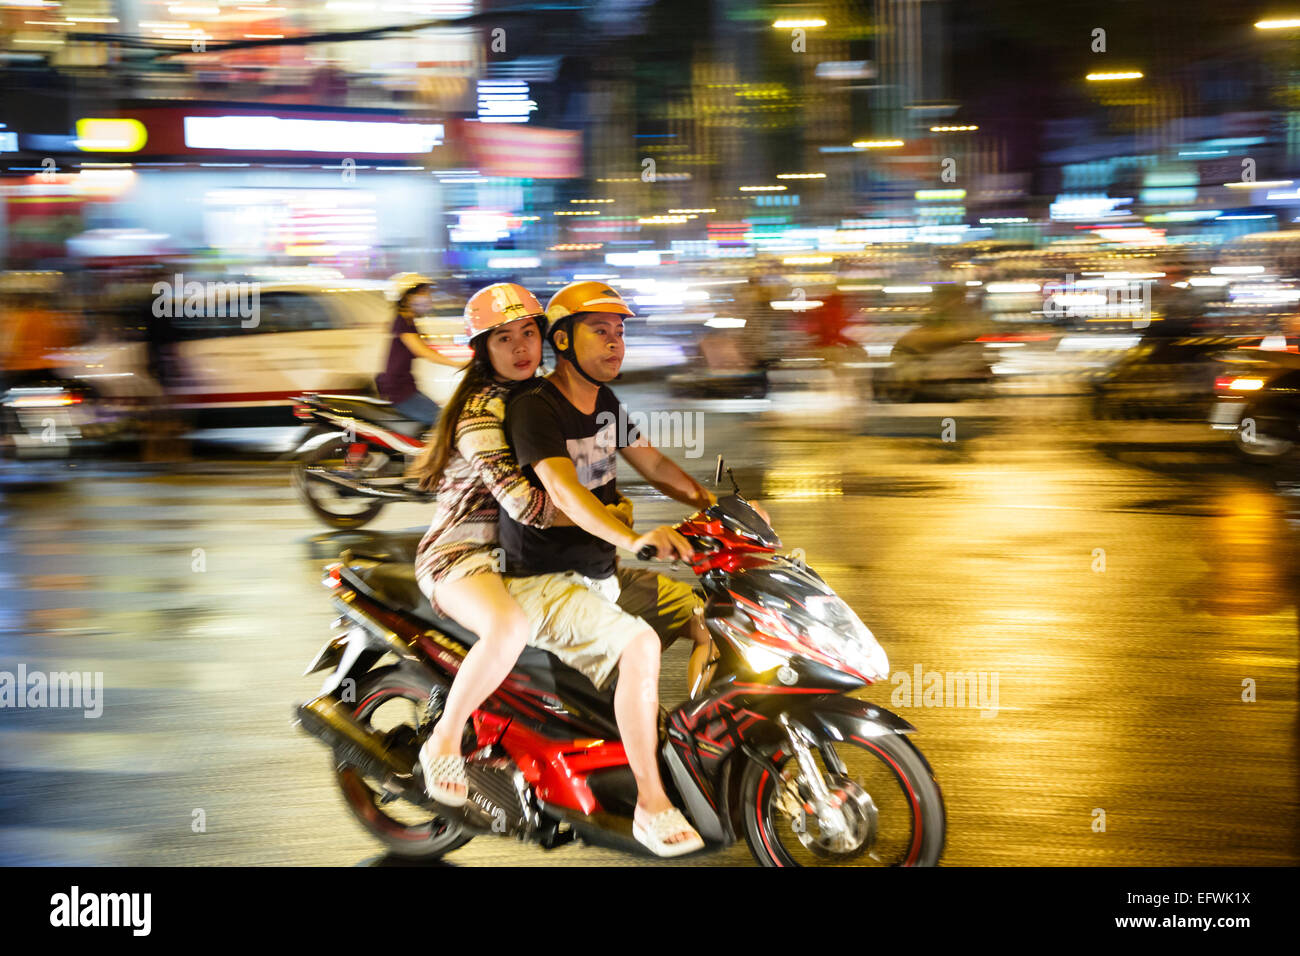 Ocupado tráfico nocturno, Ciudad de Ho Chi Minh (Saigón), Vietnam. Foto de stock